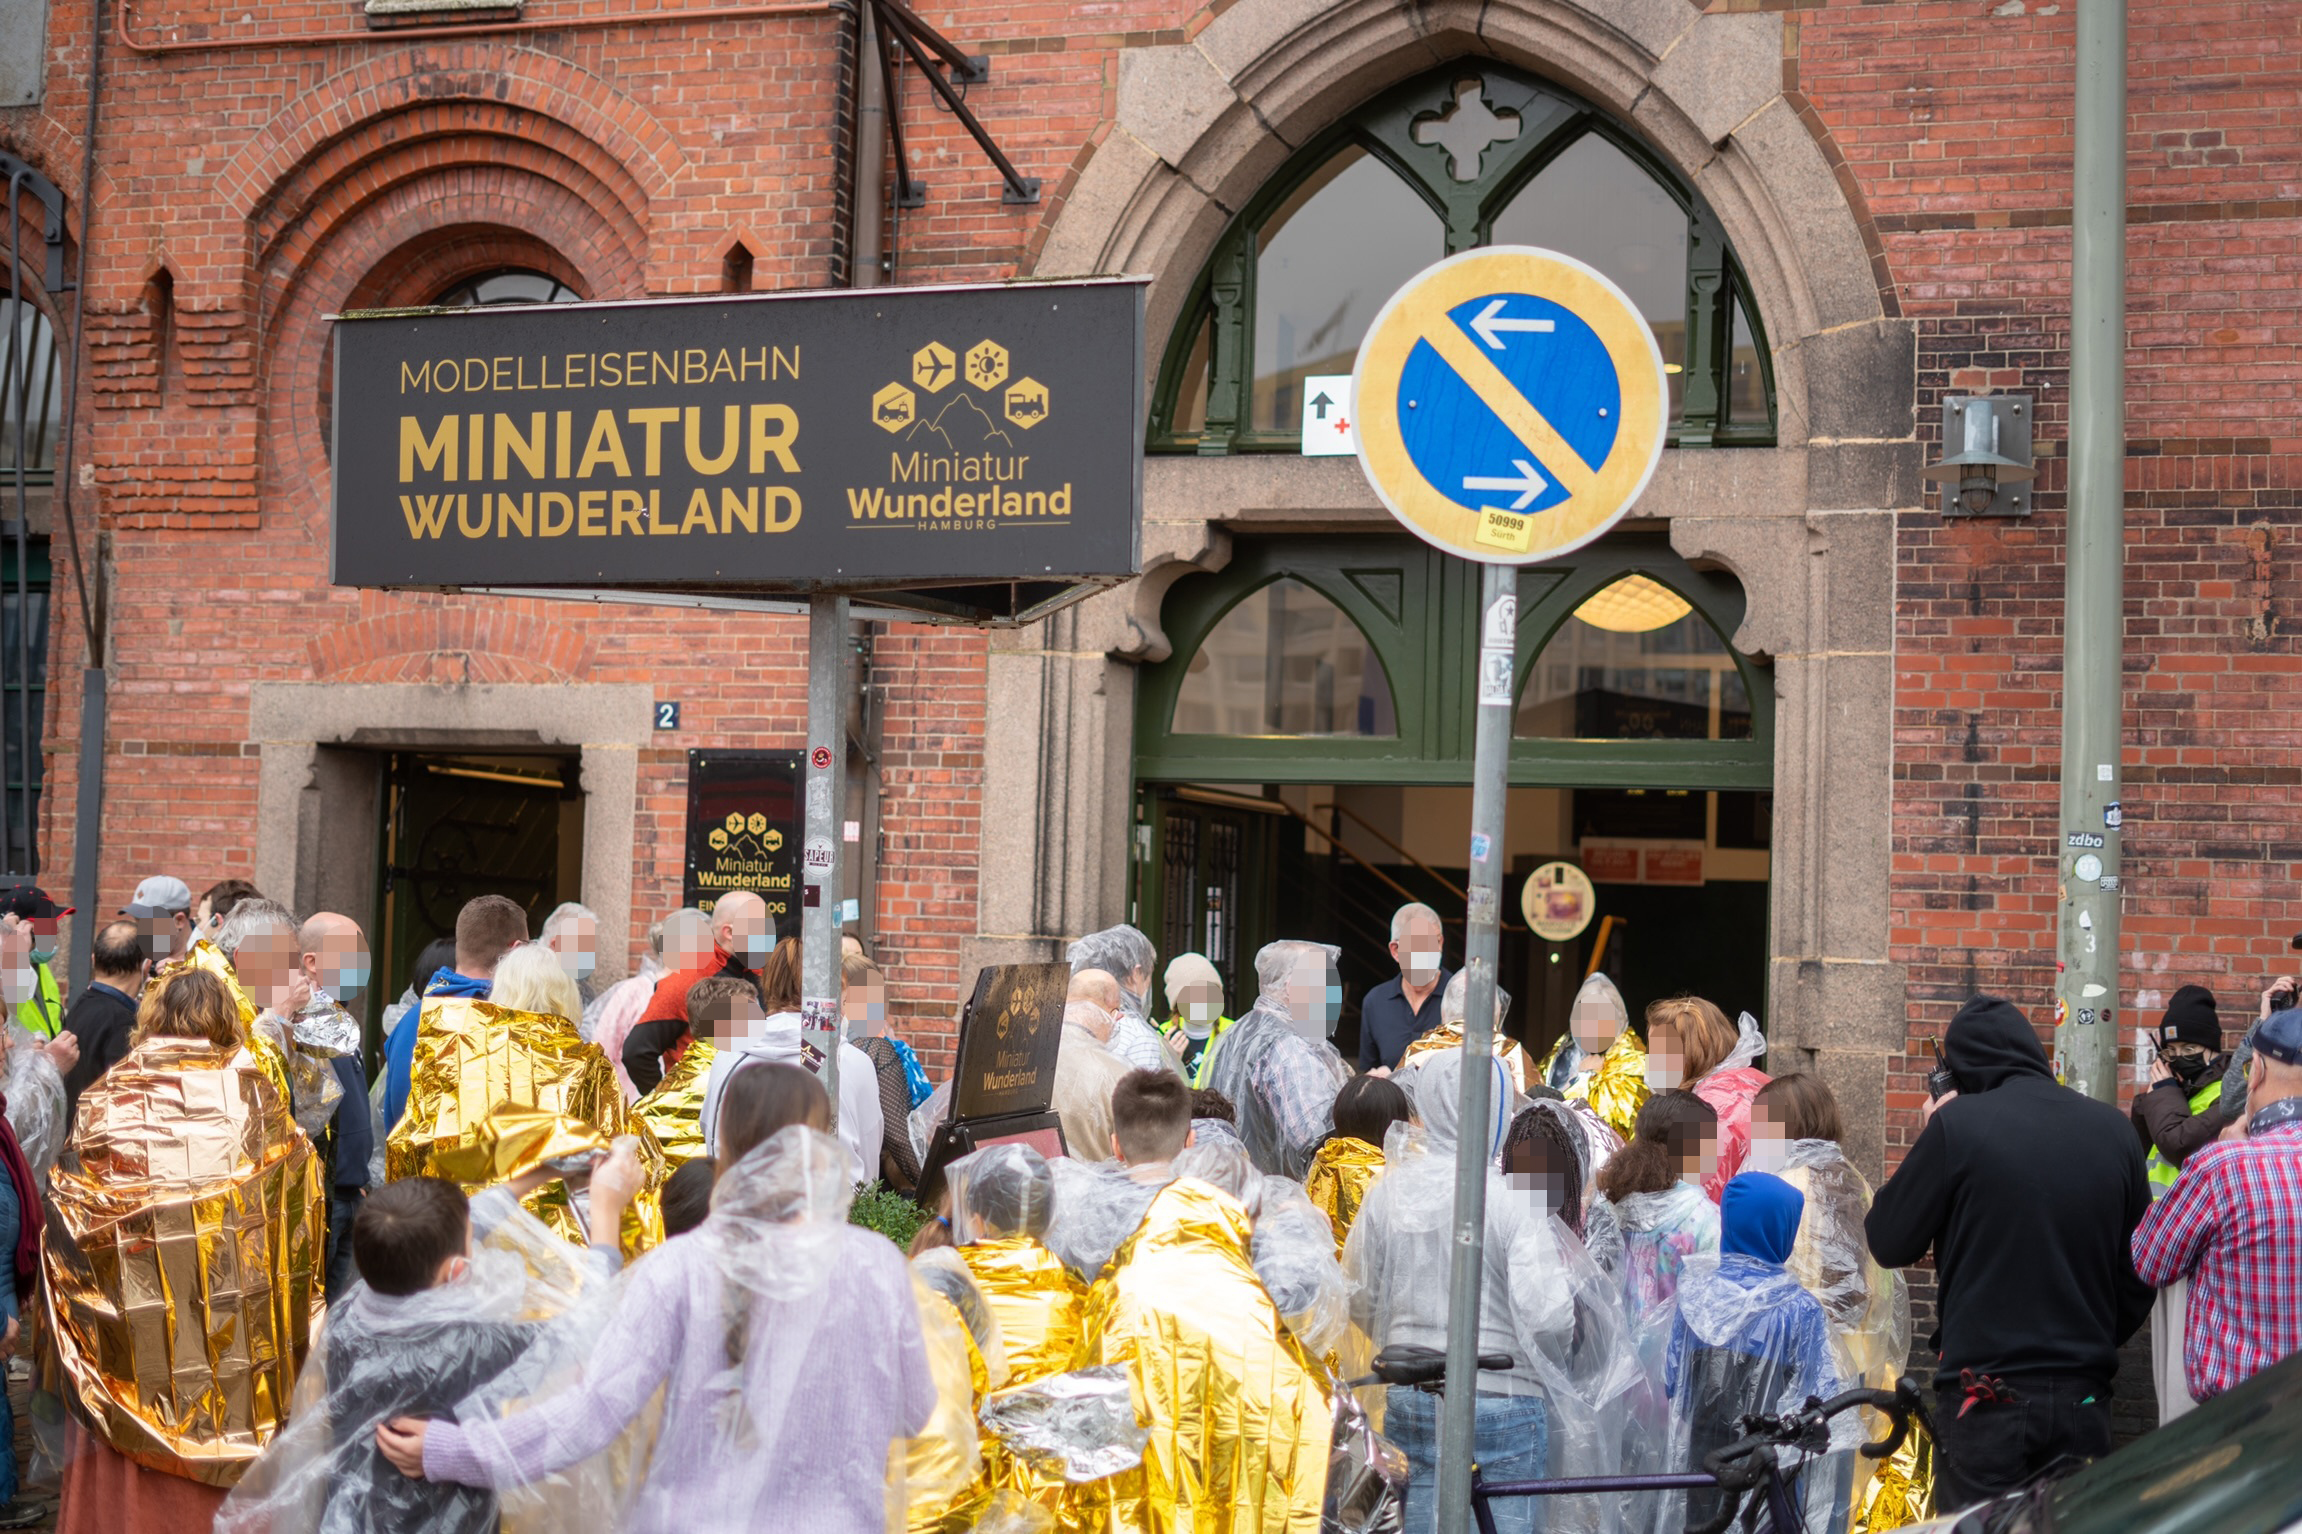 Besucher des Miniatur Wunderlandes stehen in Regencapes und Heizdecken vor dem Eingang